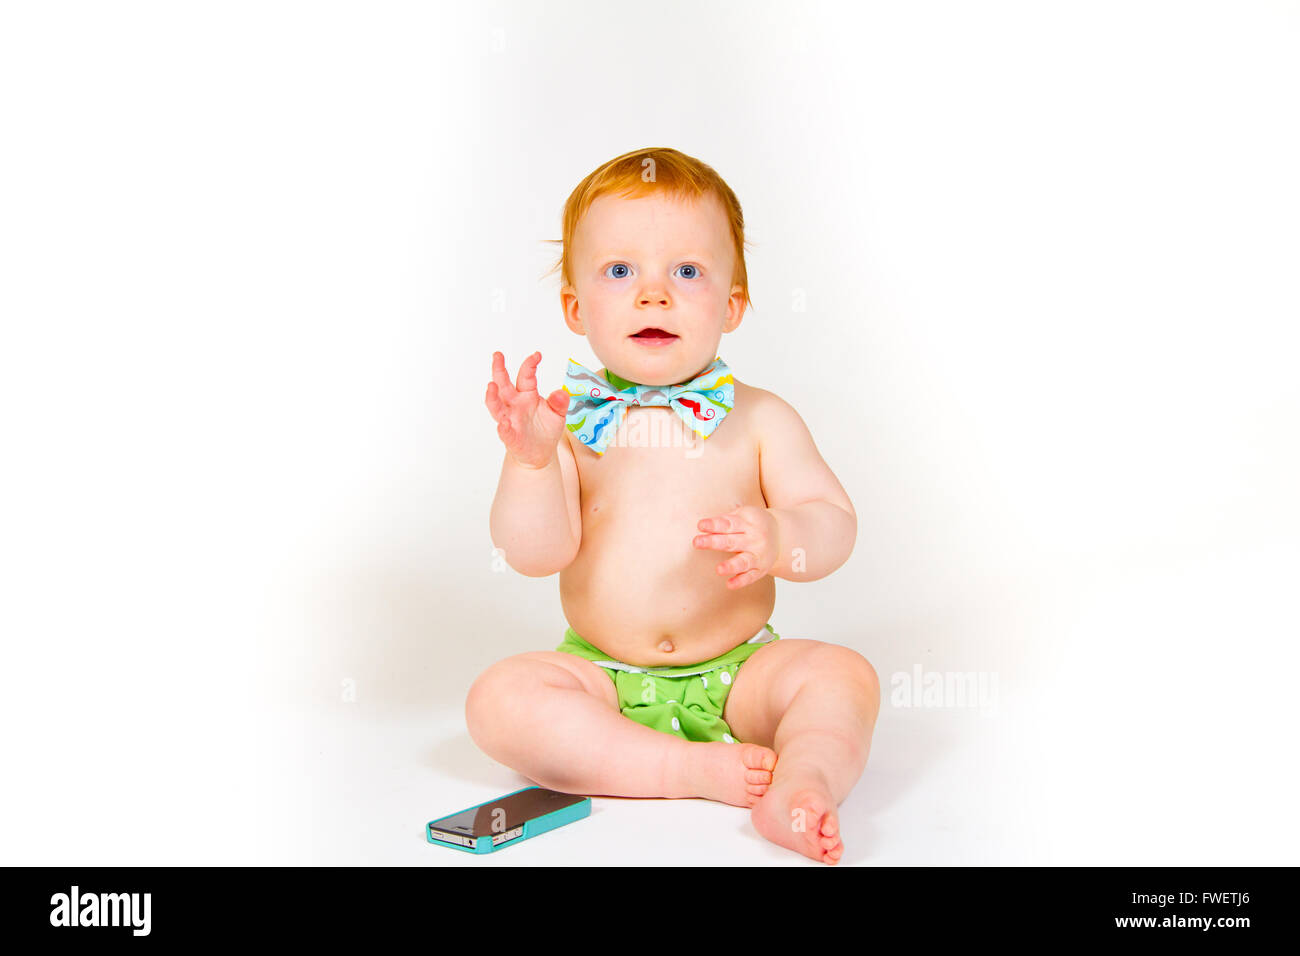 Ein einjähriger Junge spielt mit einem Handy im Studio mit einem weißen Hintergrund. Stockfoto